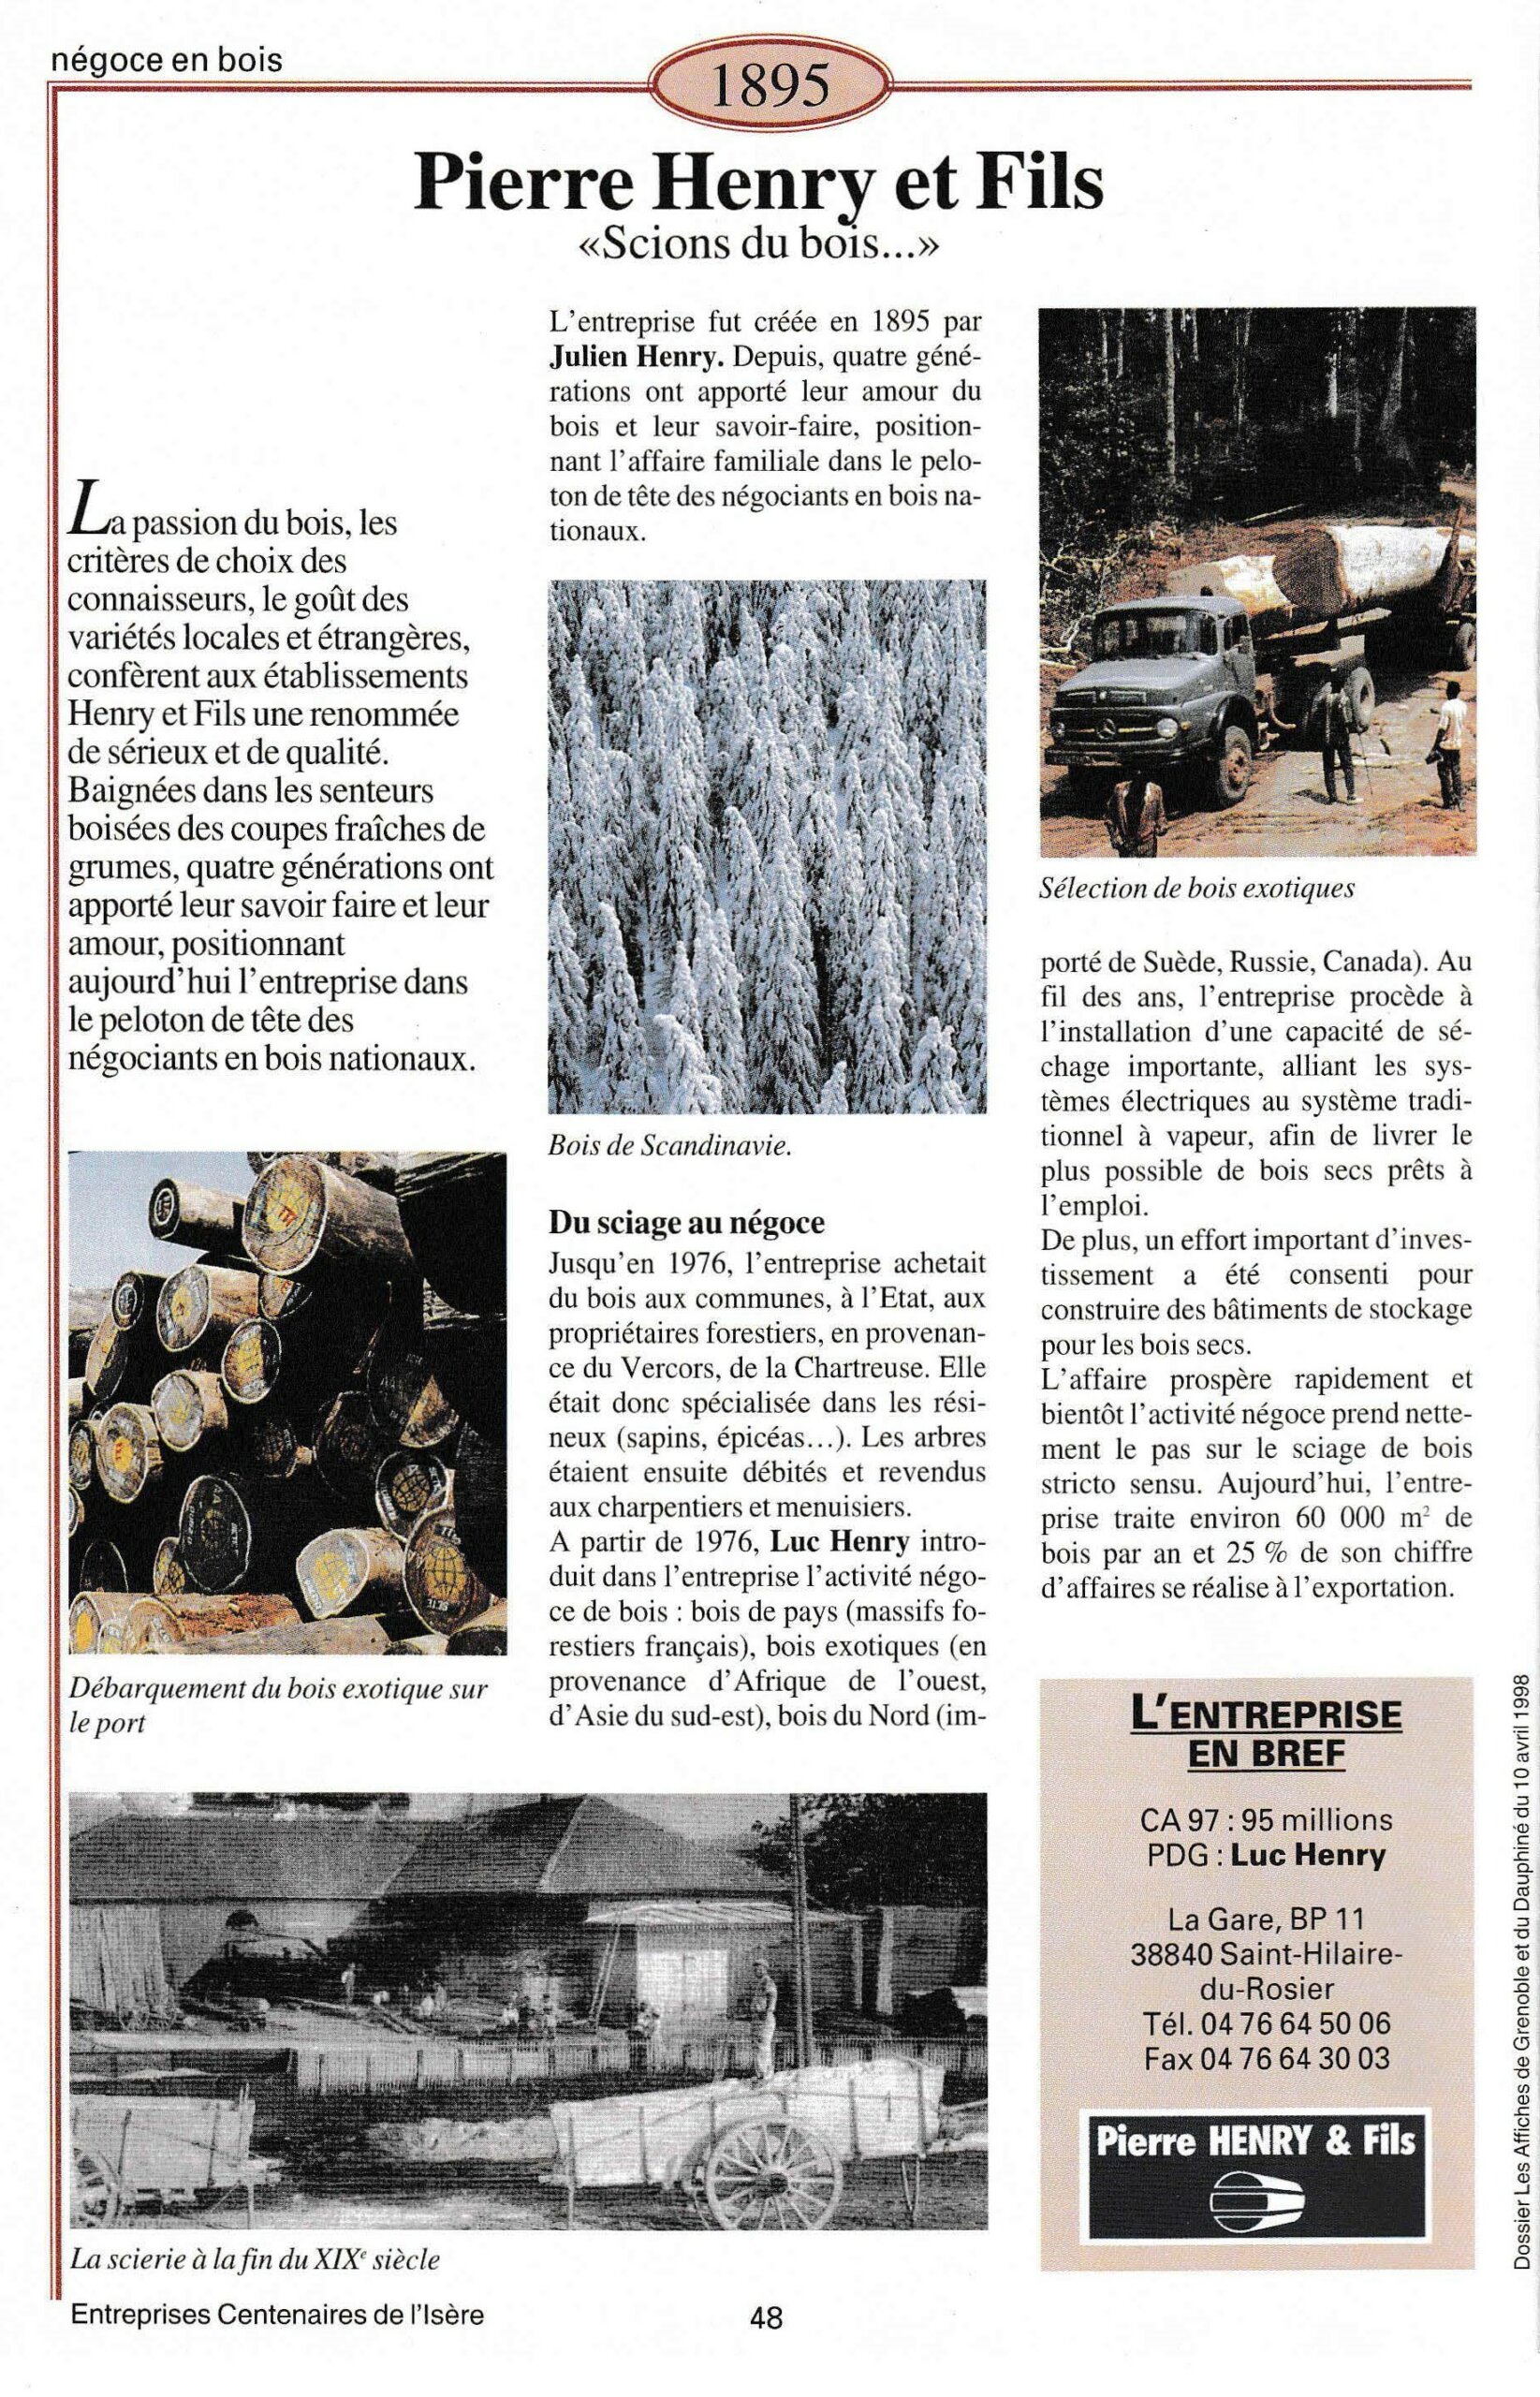 Pierre Henry et Fils - fiche du supplément "Entreprises centenaires en Isère", publié par Les affiches de Grenoble et du Dauphiné, juin 1998.